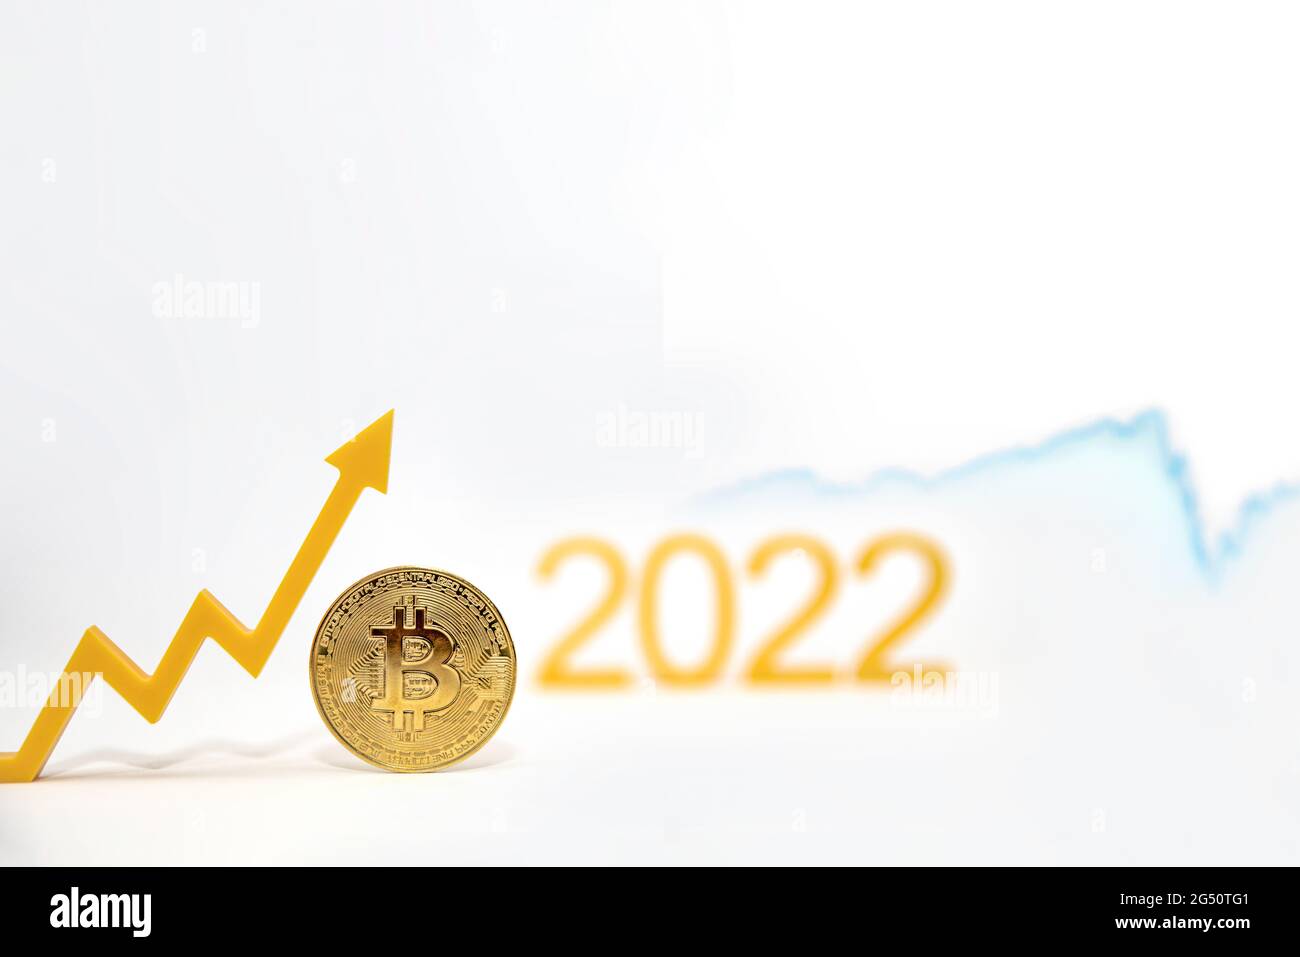 Bitcoin. Bitcoin-Preis im Jahr 2022. Beliebter Kryptowährungskurs. Die Bitcoin-Münze auf dem Kursdiagramm zeigt nach oben vor einem weißen Hintergrund Stockfoto